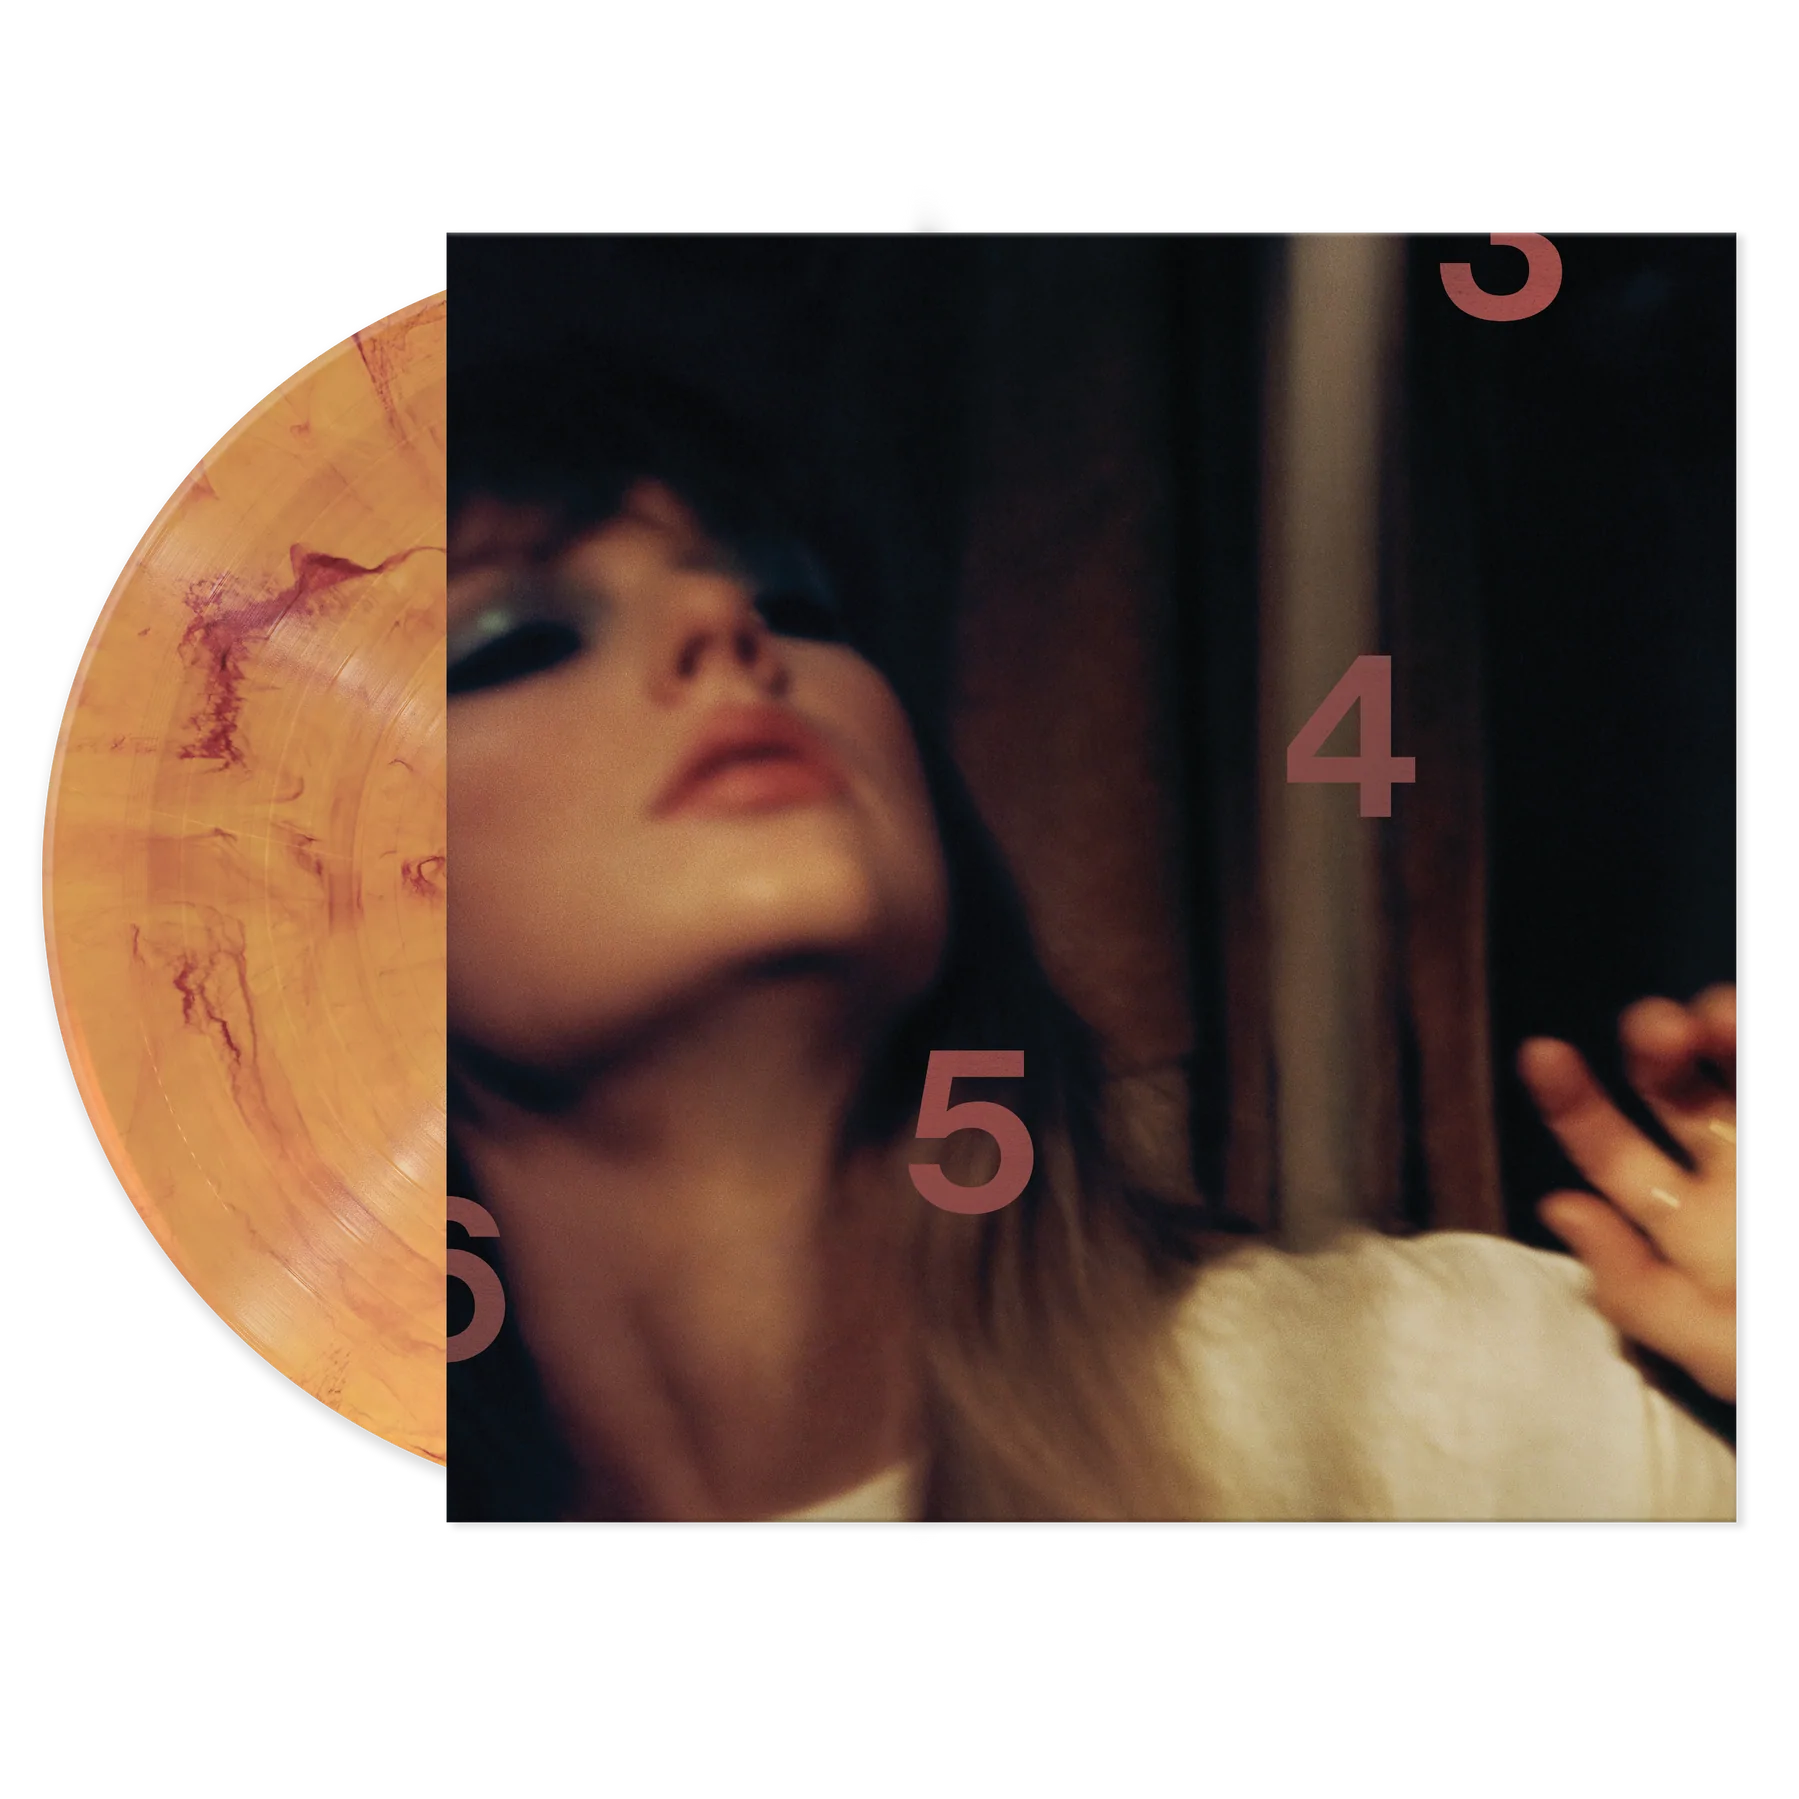 Taylor Swift Midnights Blood Moon Vinyl